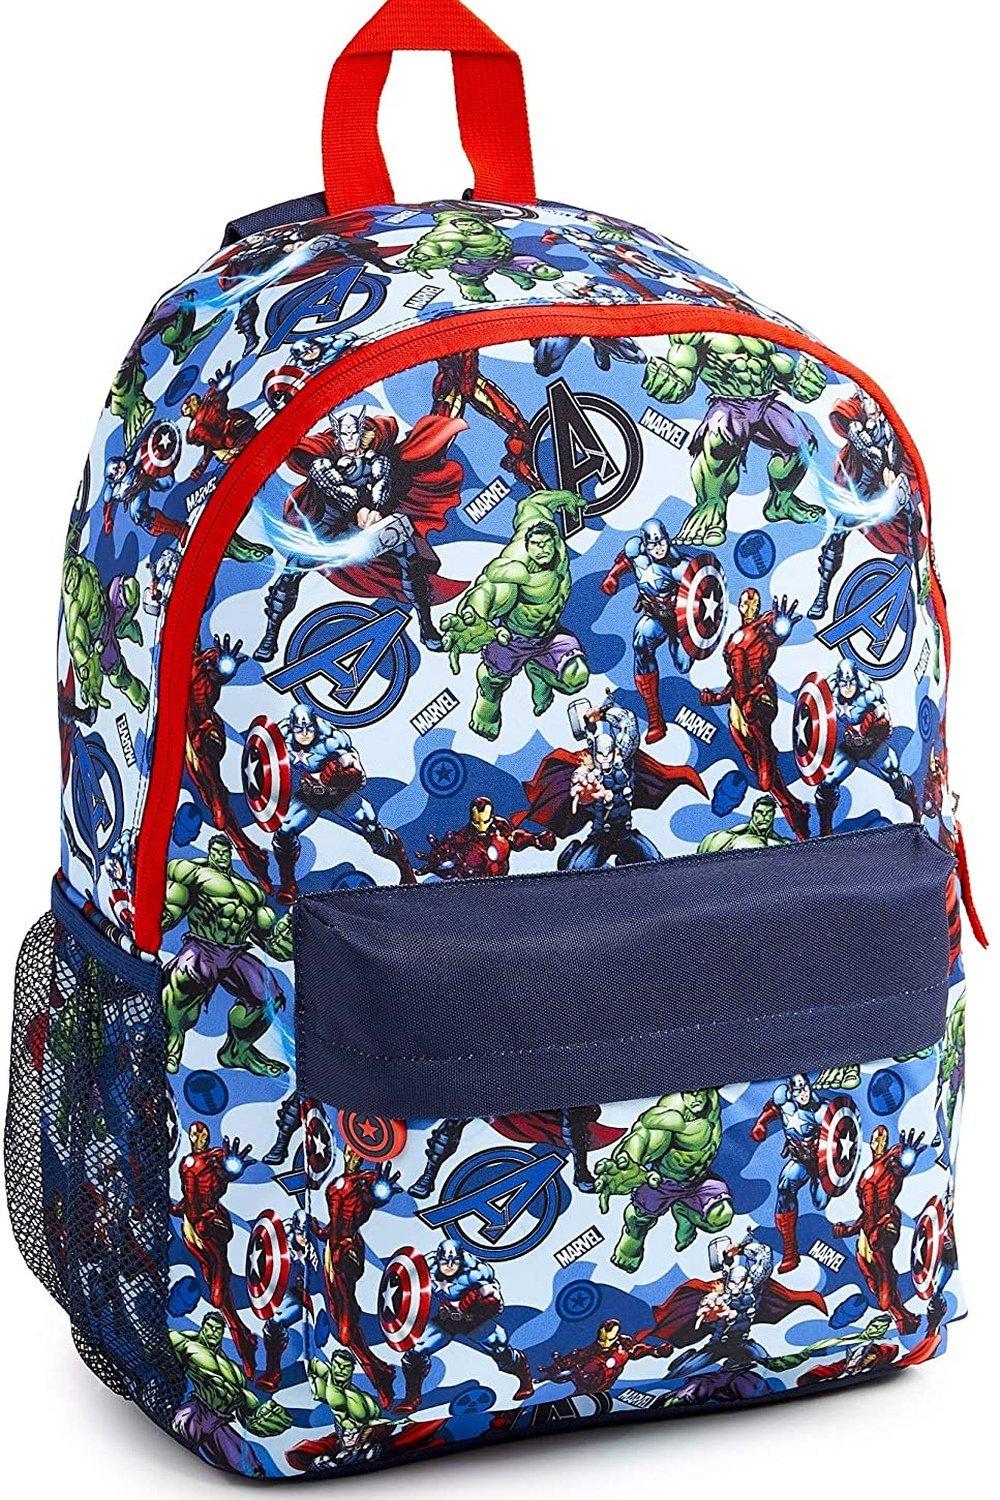 Большой рюкзак Avengers Superheros Marvel, синий винтажный арт японский ужас манга томие ито дзюндзи рюкзак для девочек и мальчиков дорожные рюкзаки для подростков школьная сумка